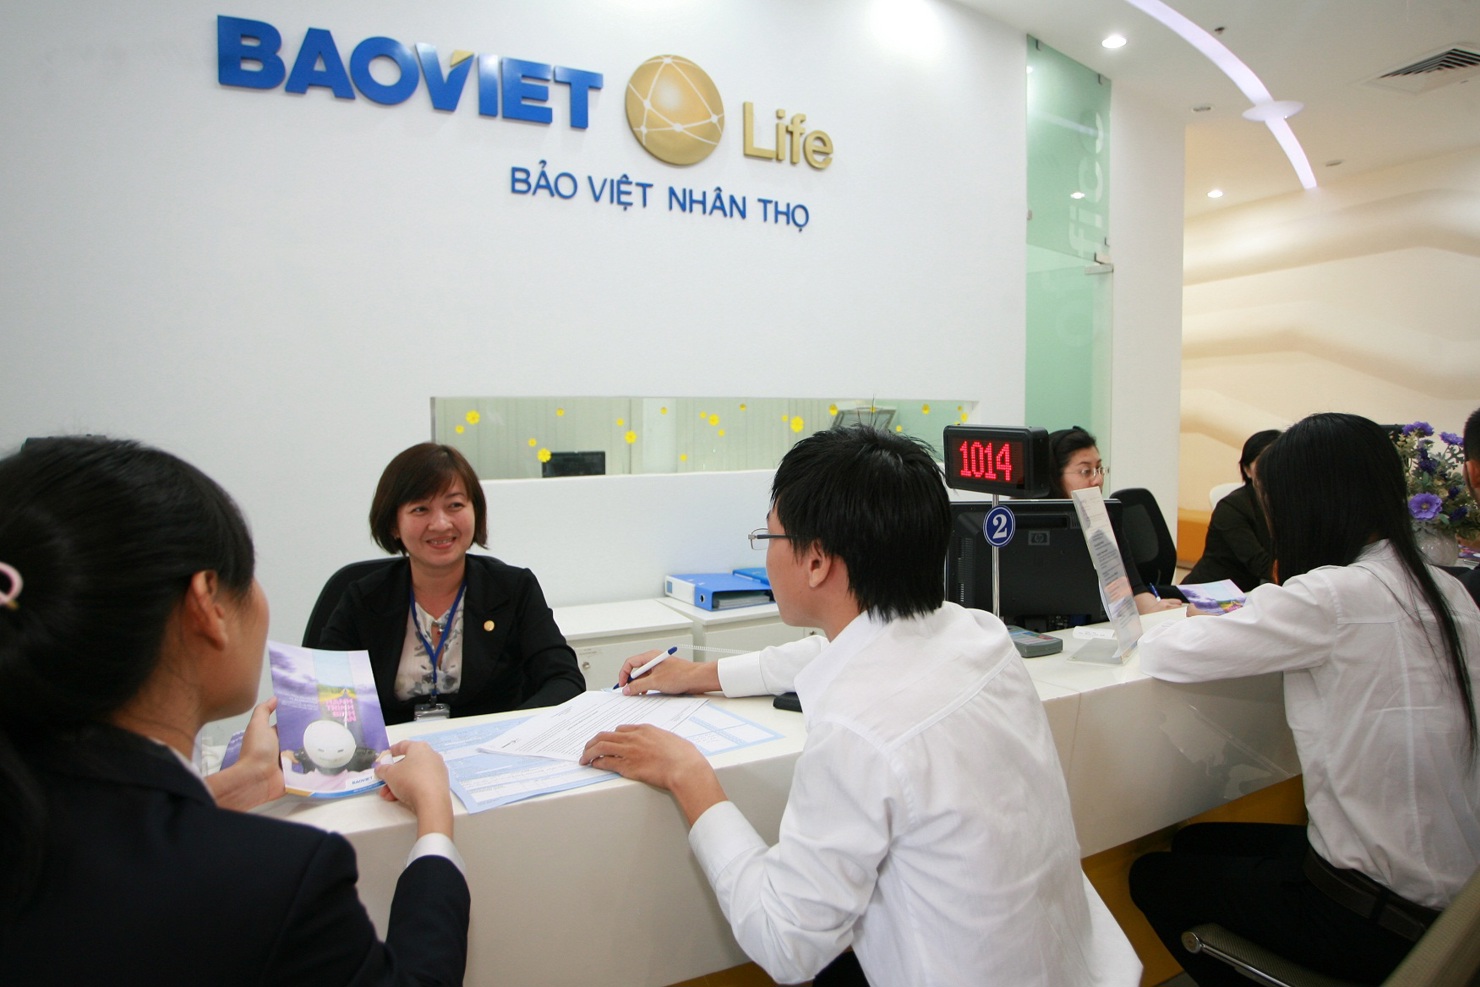 Năm 2015, tổng doanh thu bảo hiểm ước đạt 81.374 tỷ đồng, chiếm khoảng 2% GDP. Nguồn: baoviet.com.vn